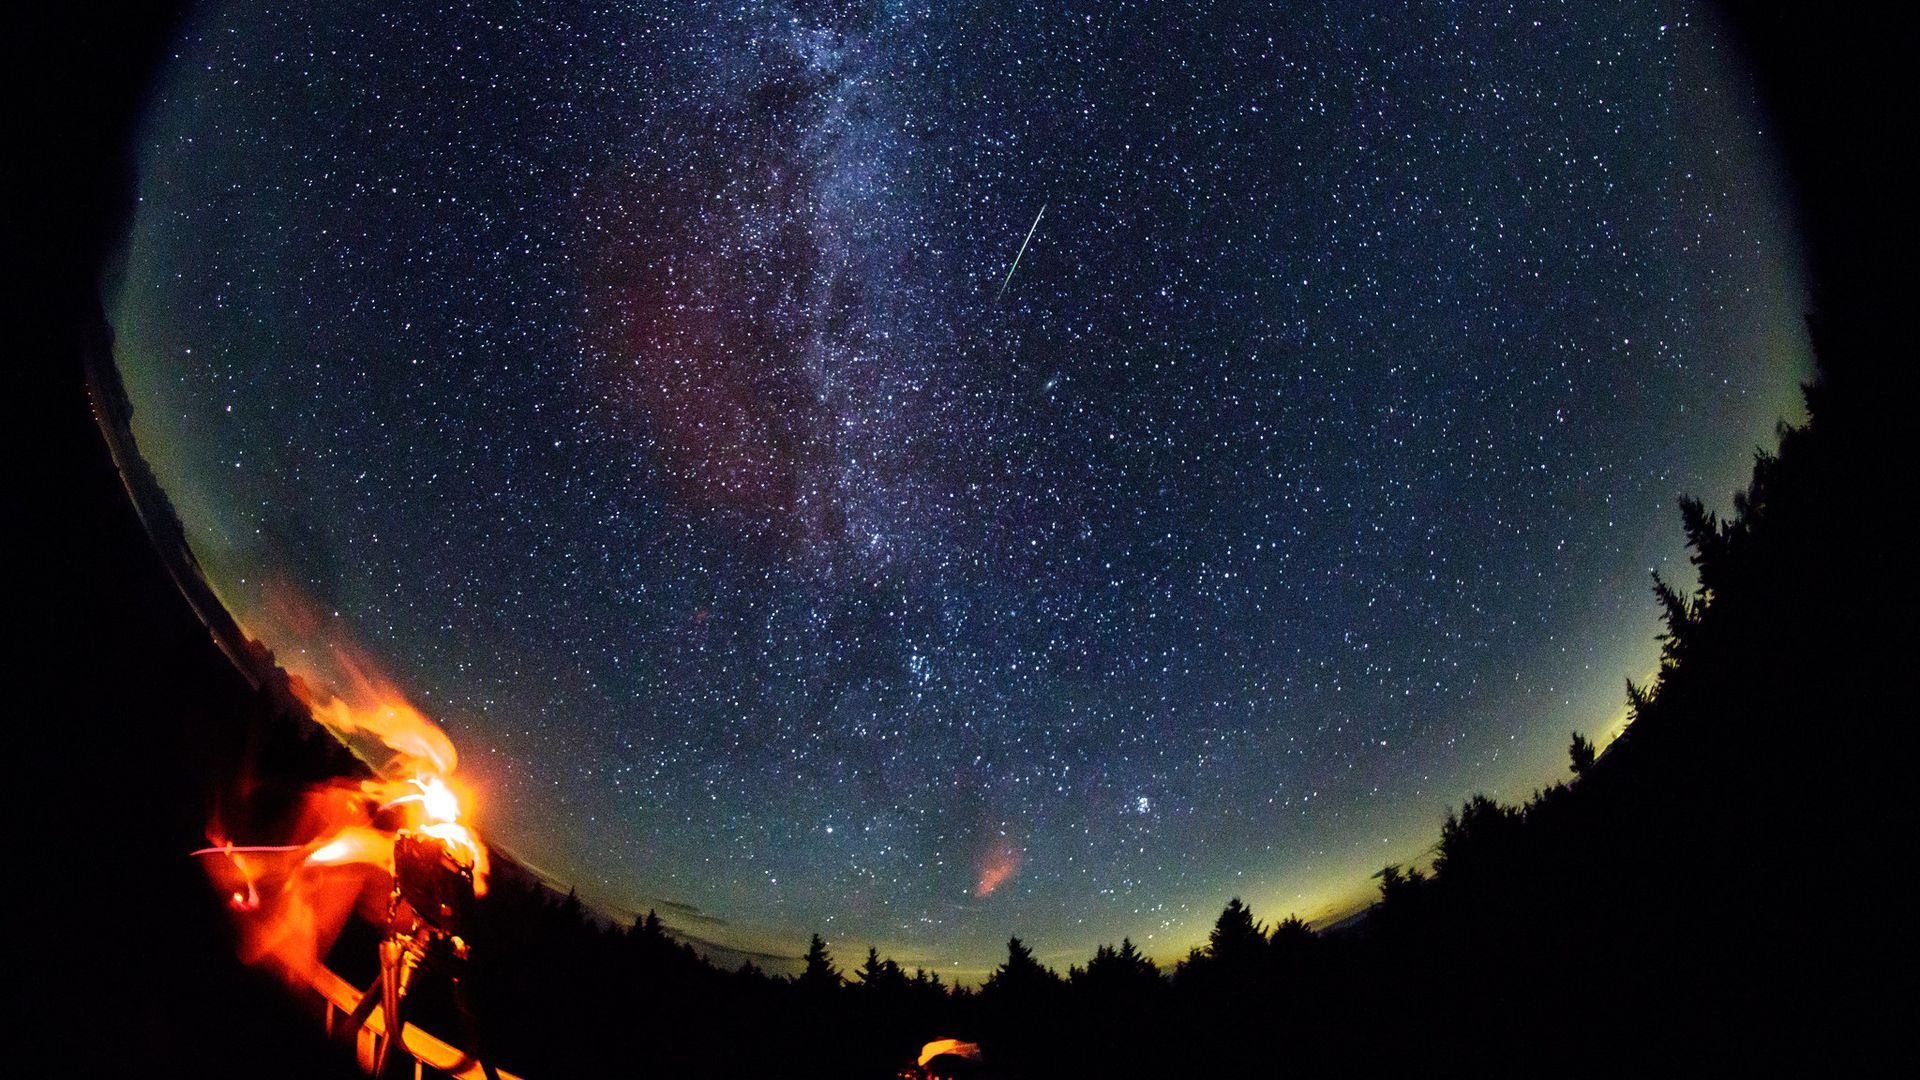 A Perseid meteor seen in 2016.